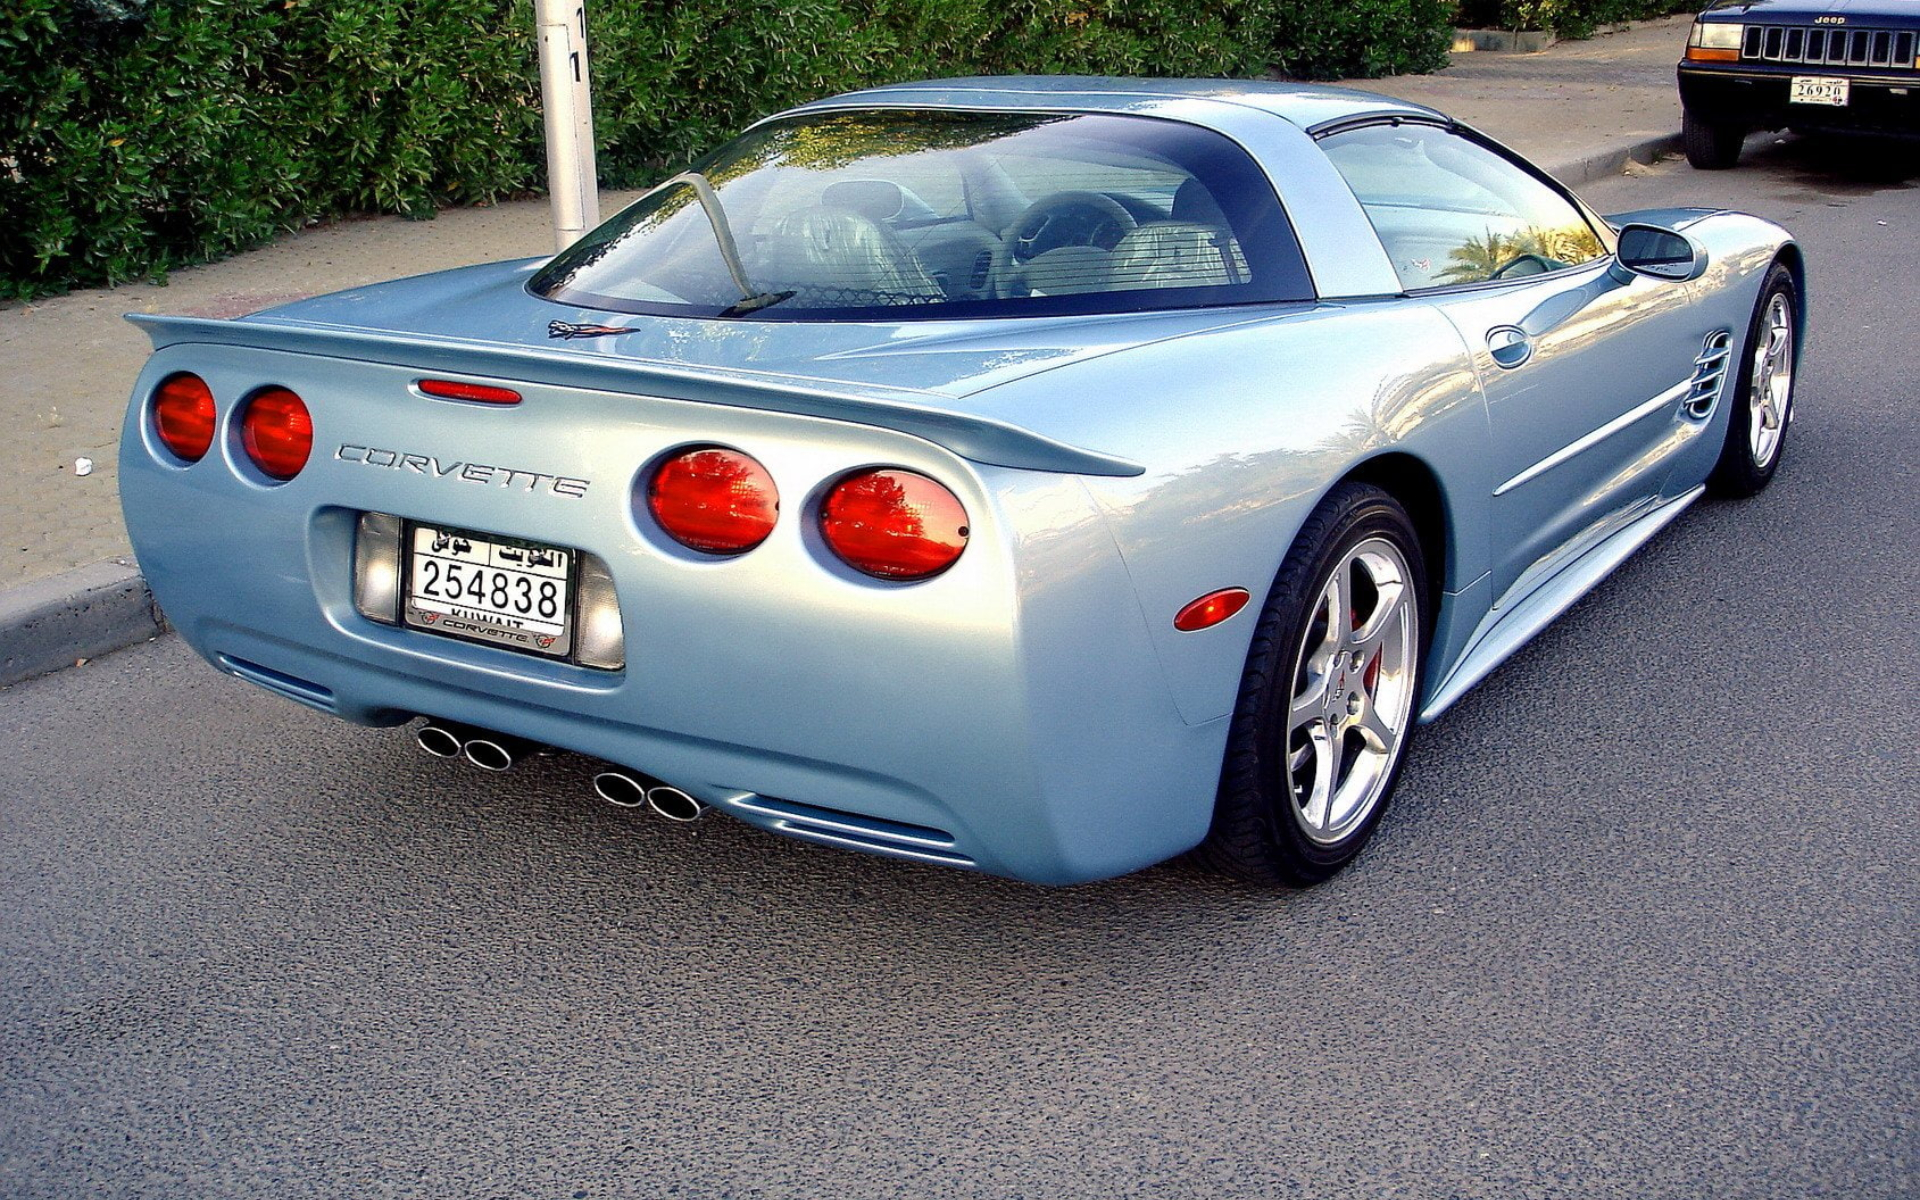 1997 Corvette Wallpapers